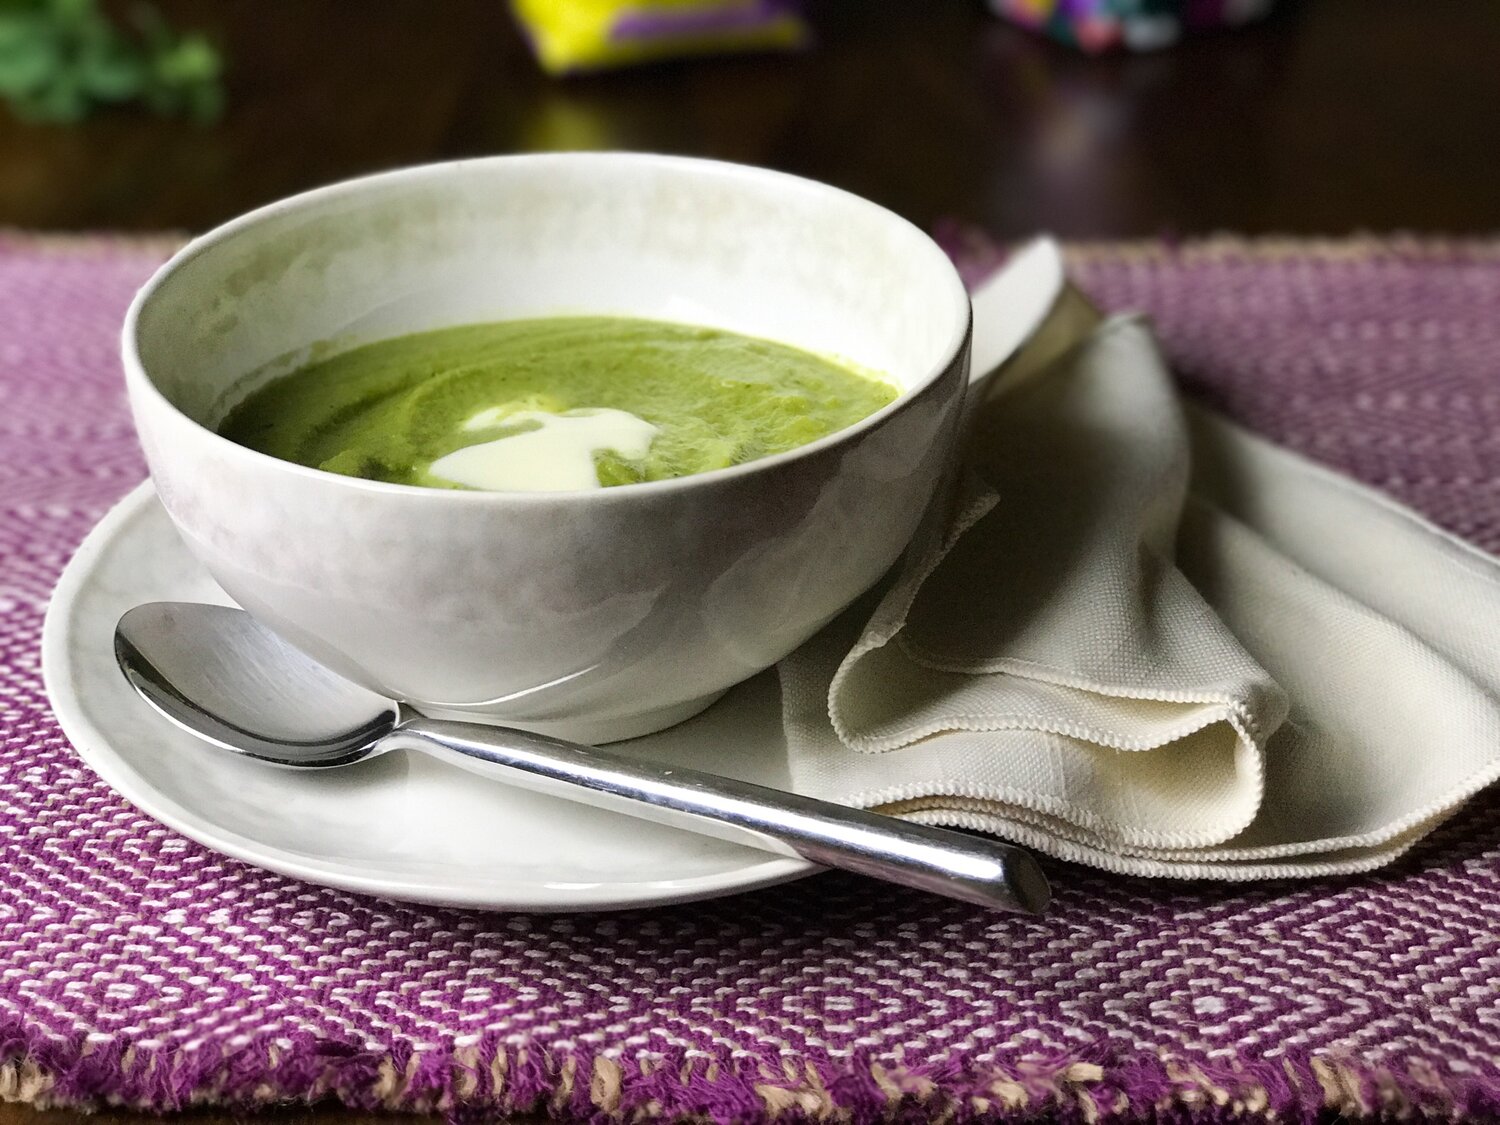 Fresh Pea Soup (Potage Saint-Germain)